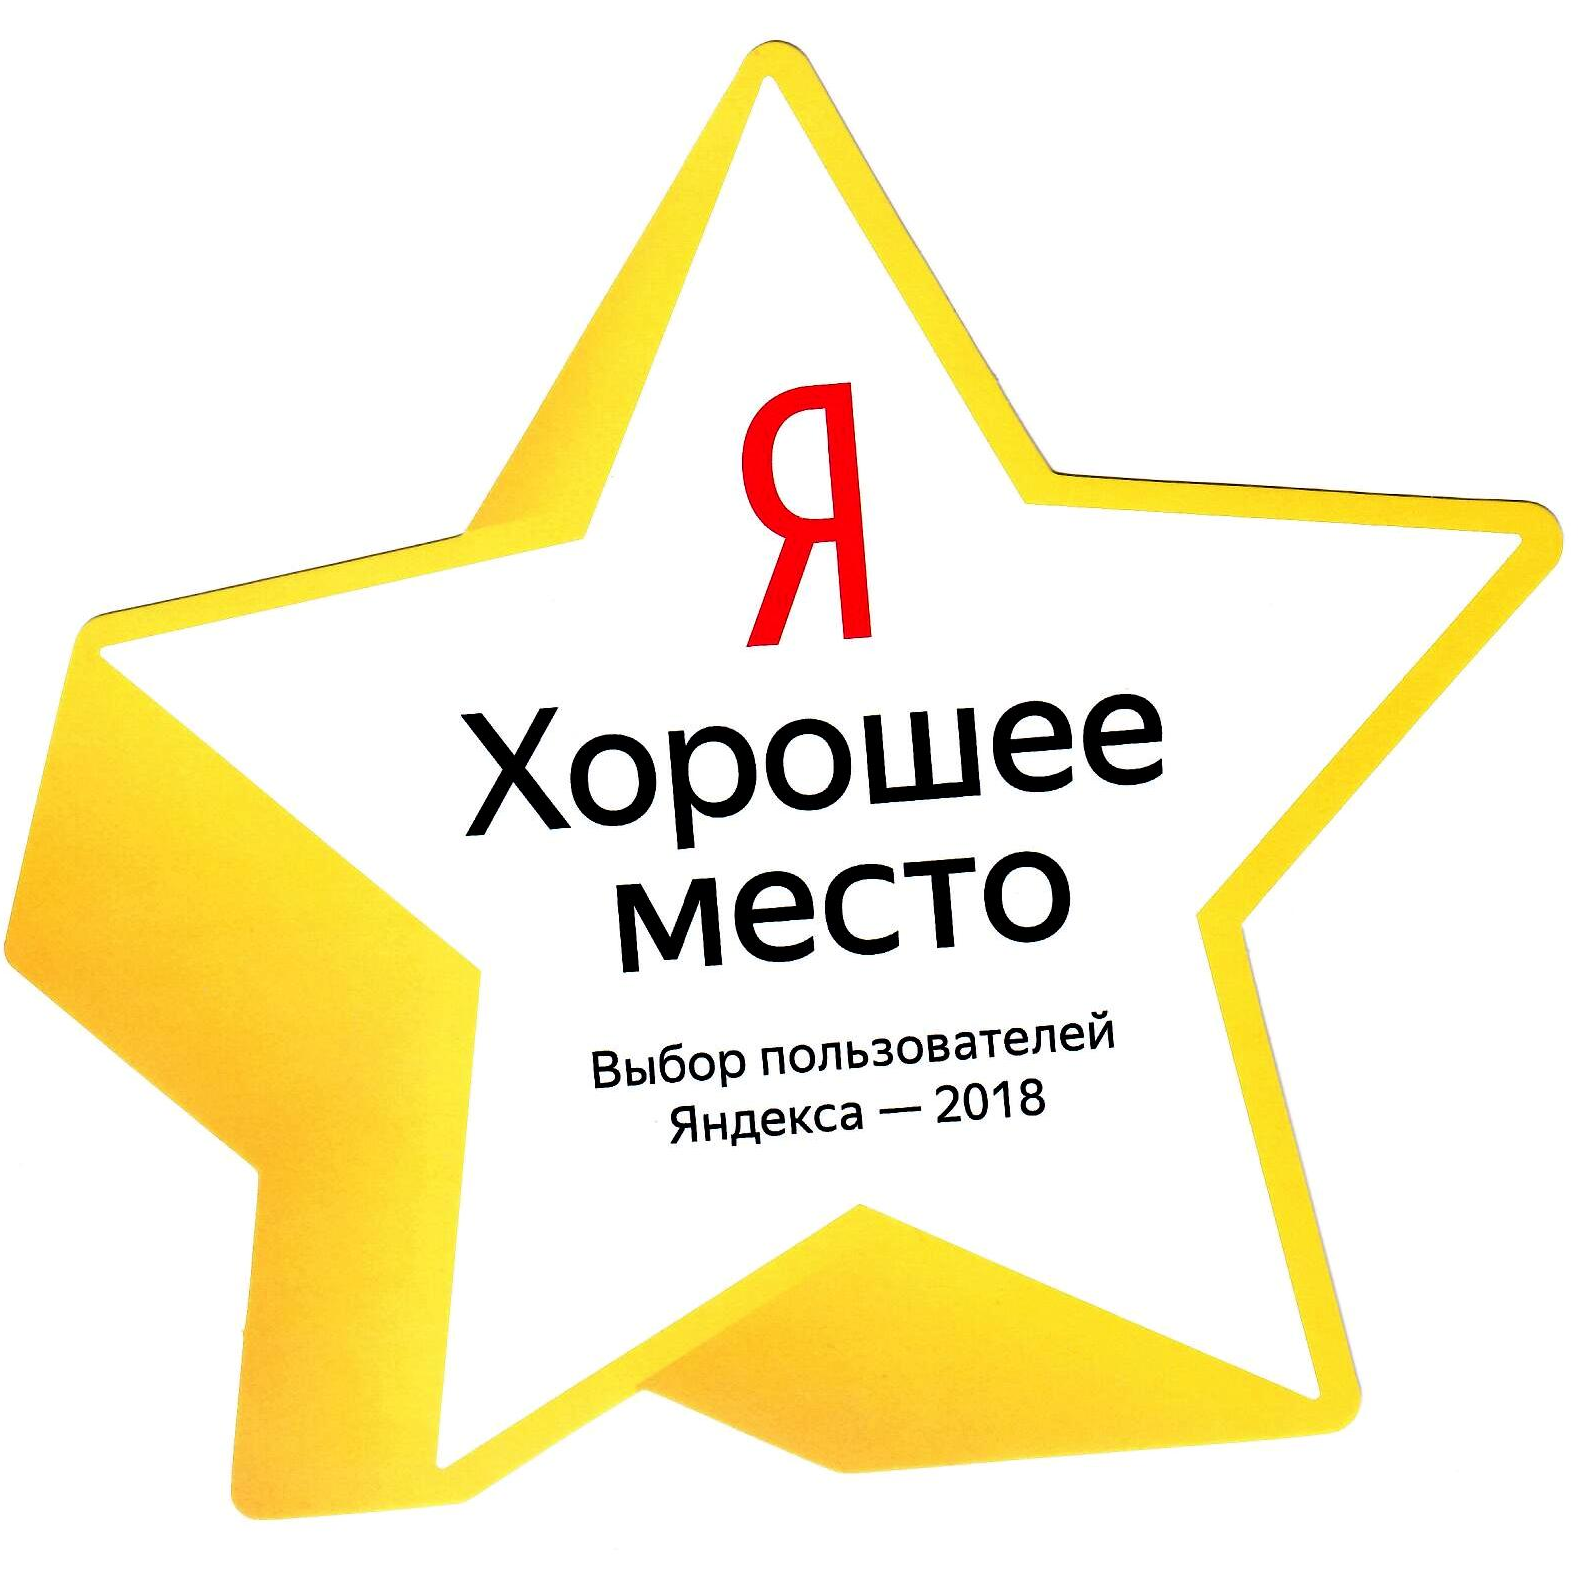 Звезда от Яндекса